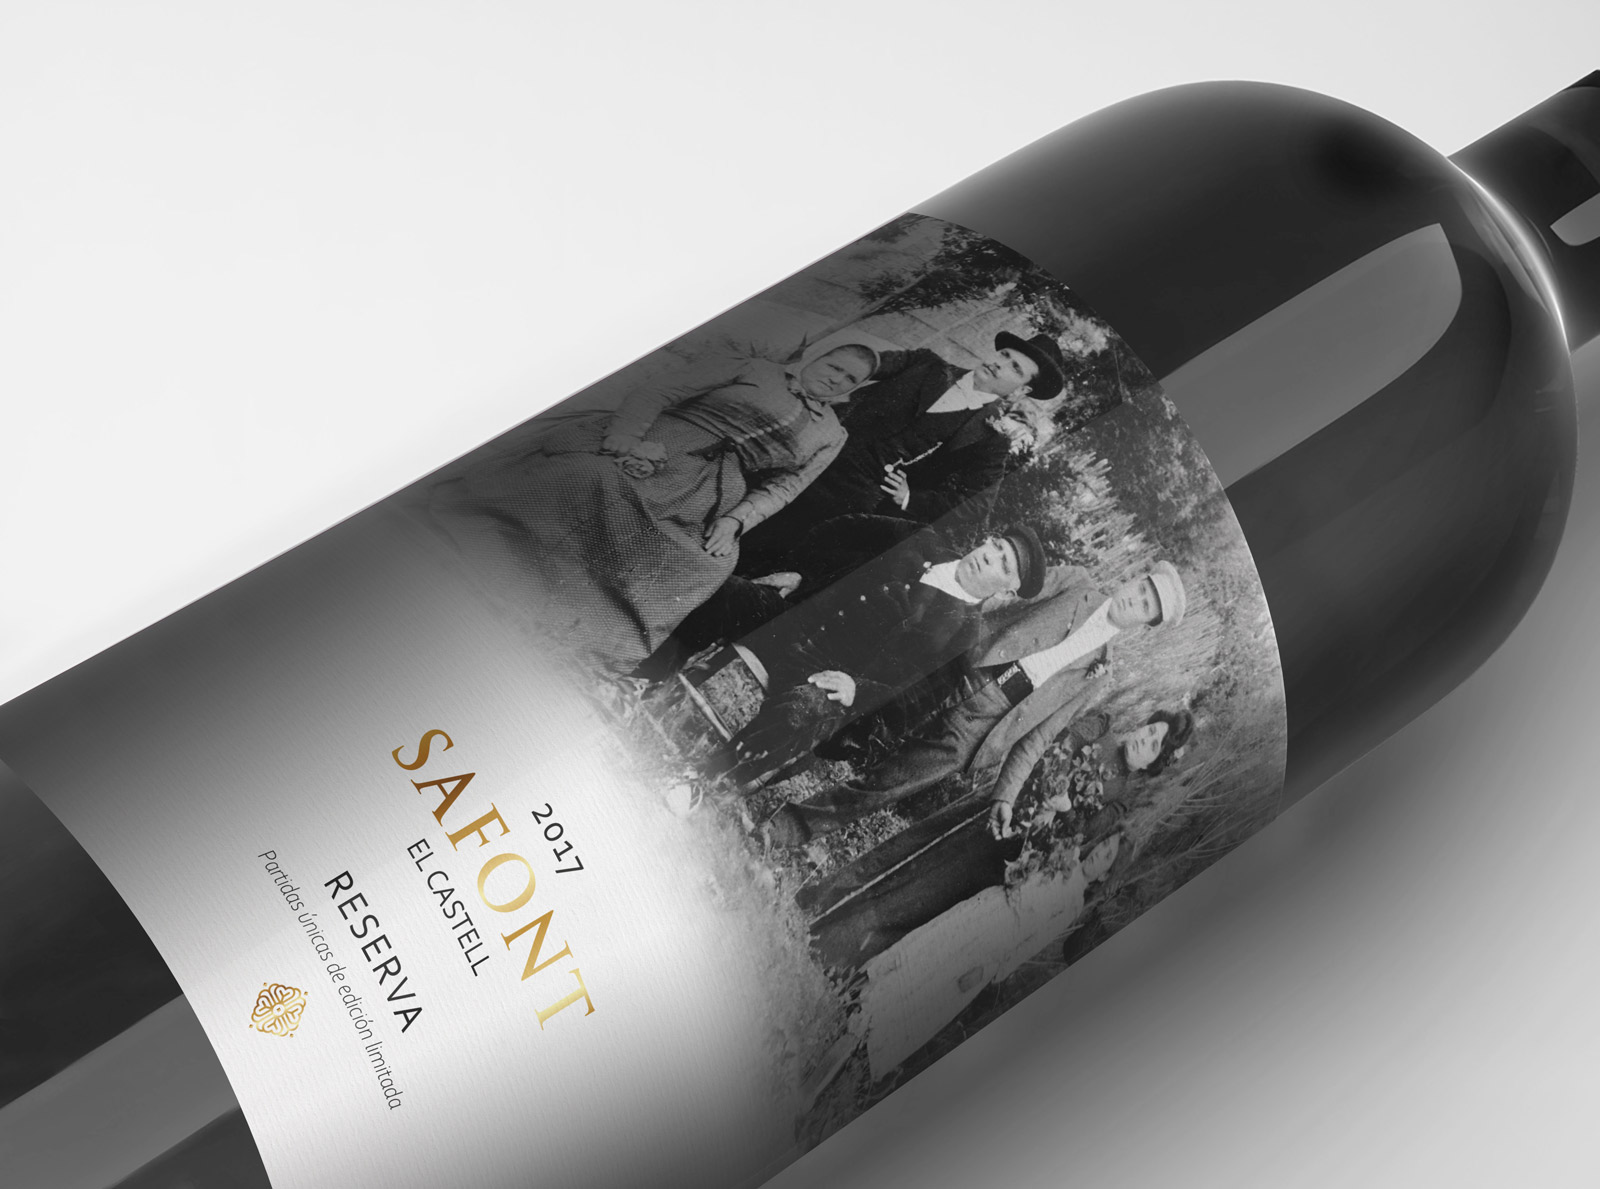 Diseño gráfico y creativo de etiquetas y packaging de vino para FAMILIA SAFONT